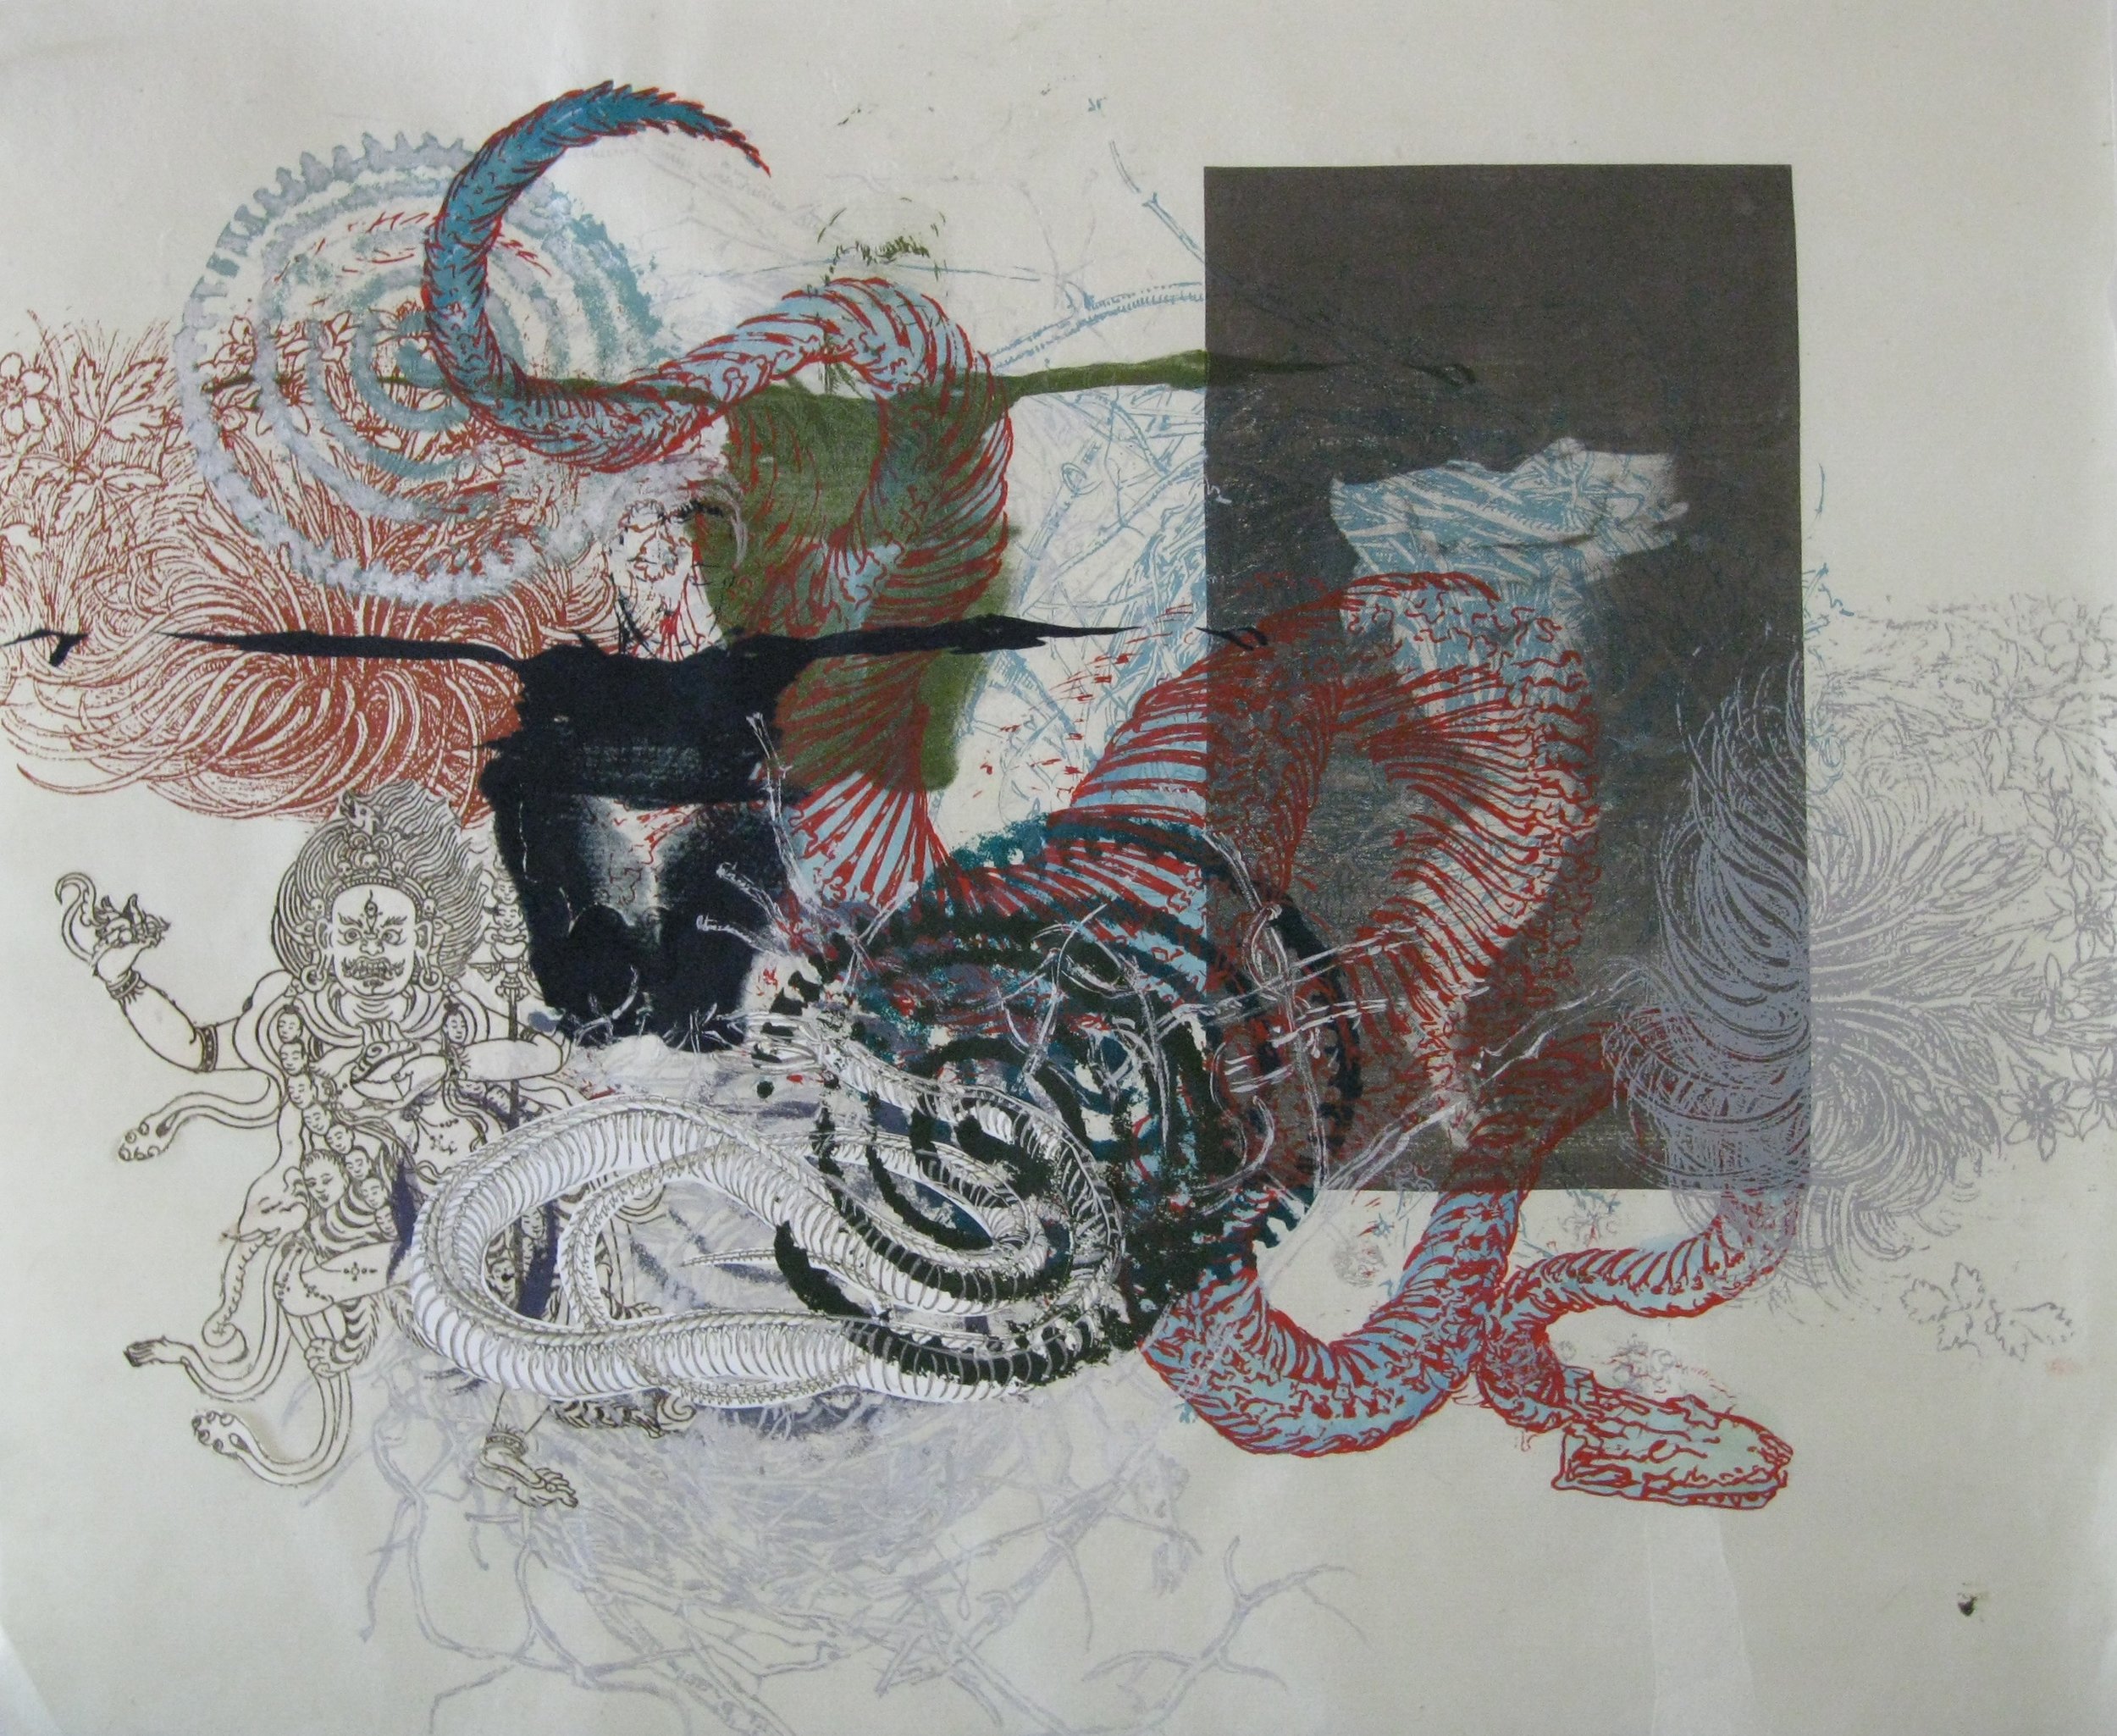  Snakedance 1, 2015, Silkscreen, Cyanotype, Found Paper, Hand Drawing,  24 x 19 